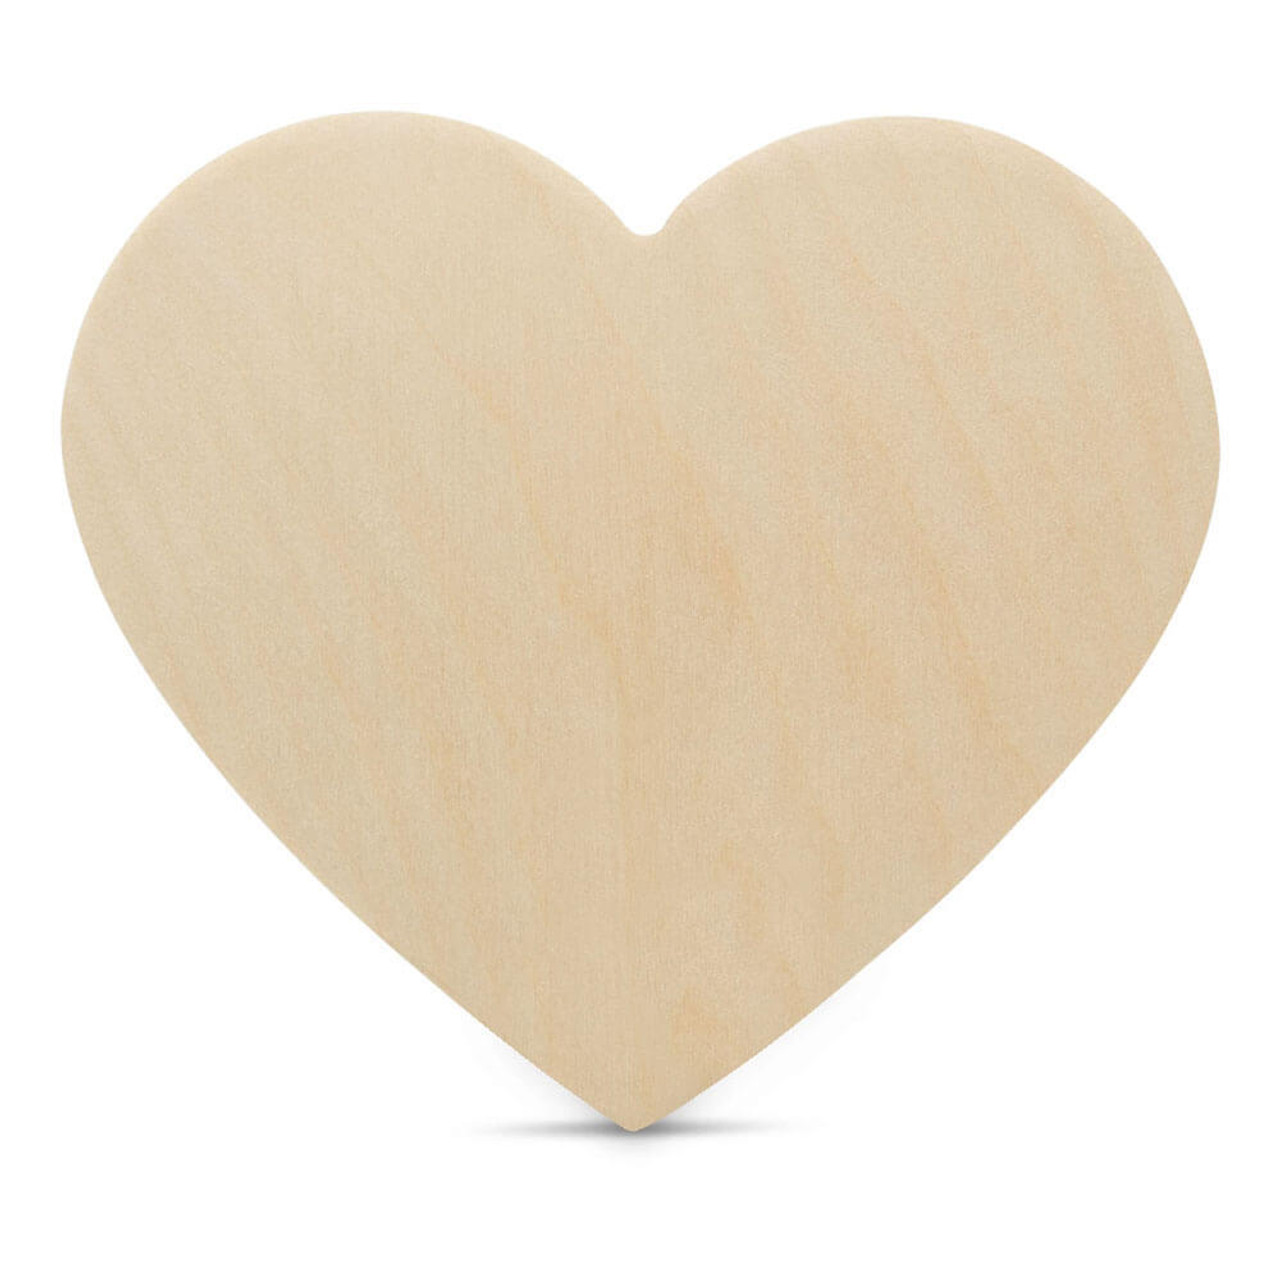 14 Heart Wooden Cutout, 14 x 12-1/2 x 1/4